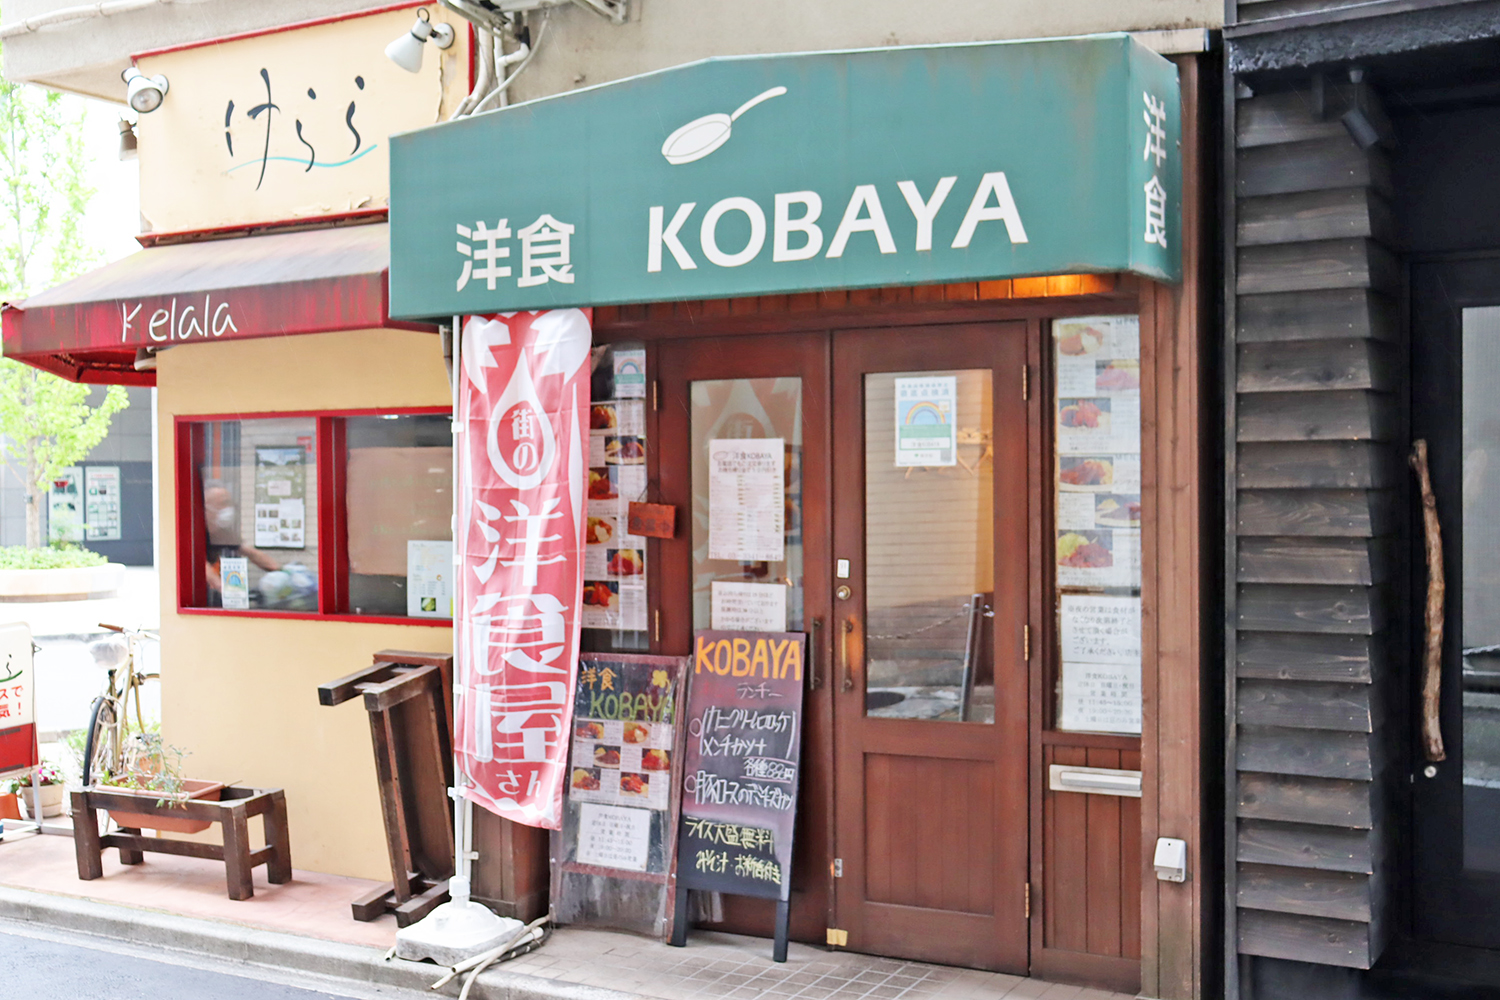 靖国通りを北に曲がると見えてくる『洋食KOBAYA』。まるで手招きしているような赤いのぼりがレトロでいい。